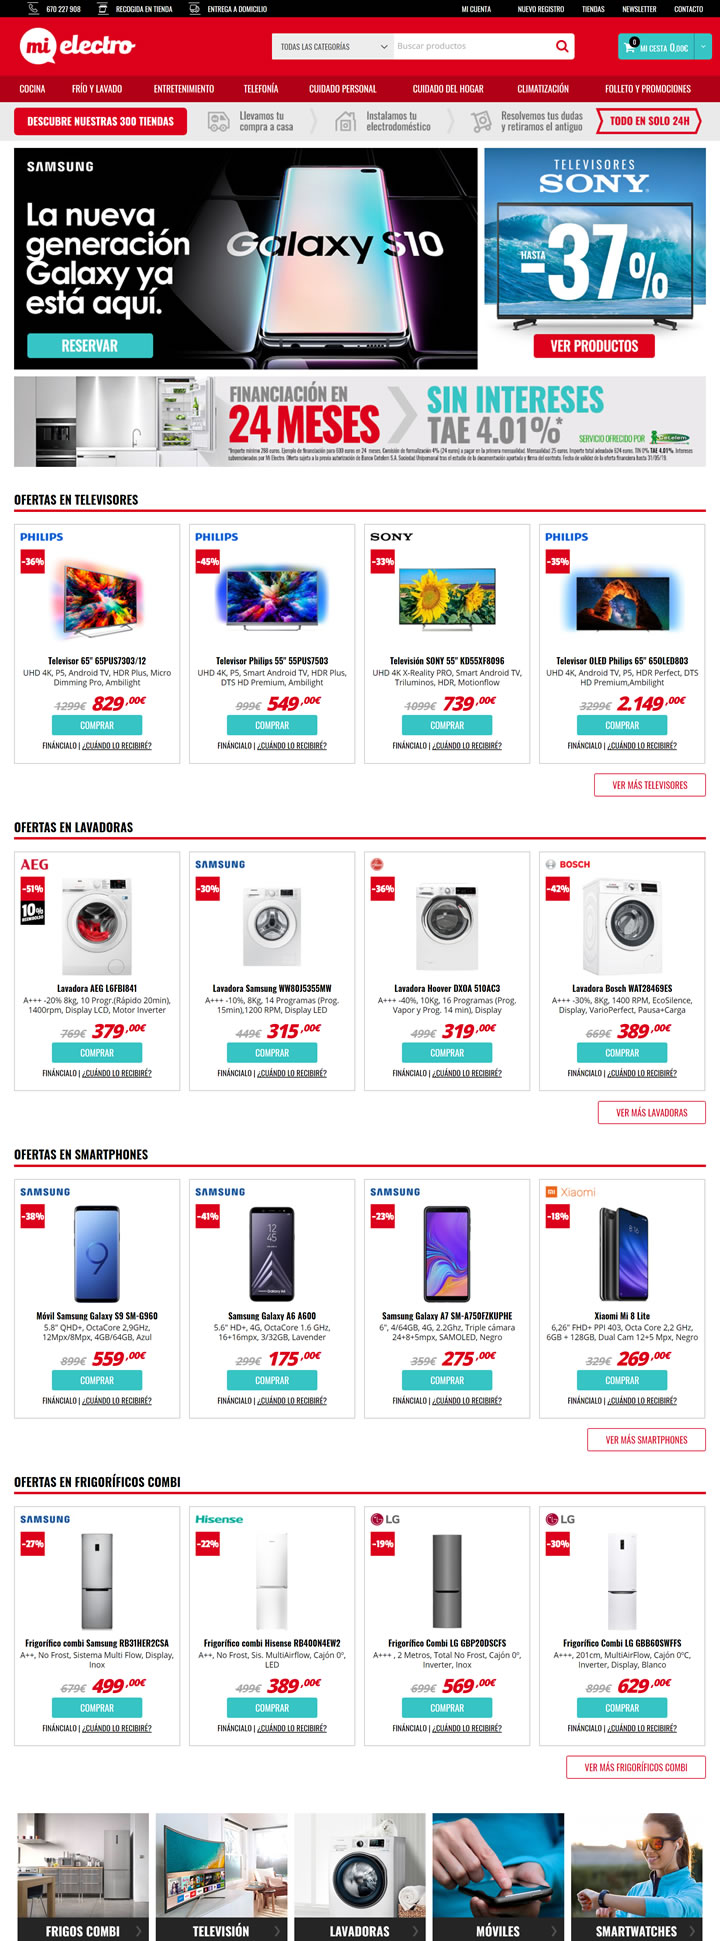 西班牙家用电器和电子产品购物网站：Mi Electro